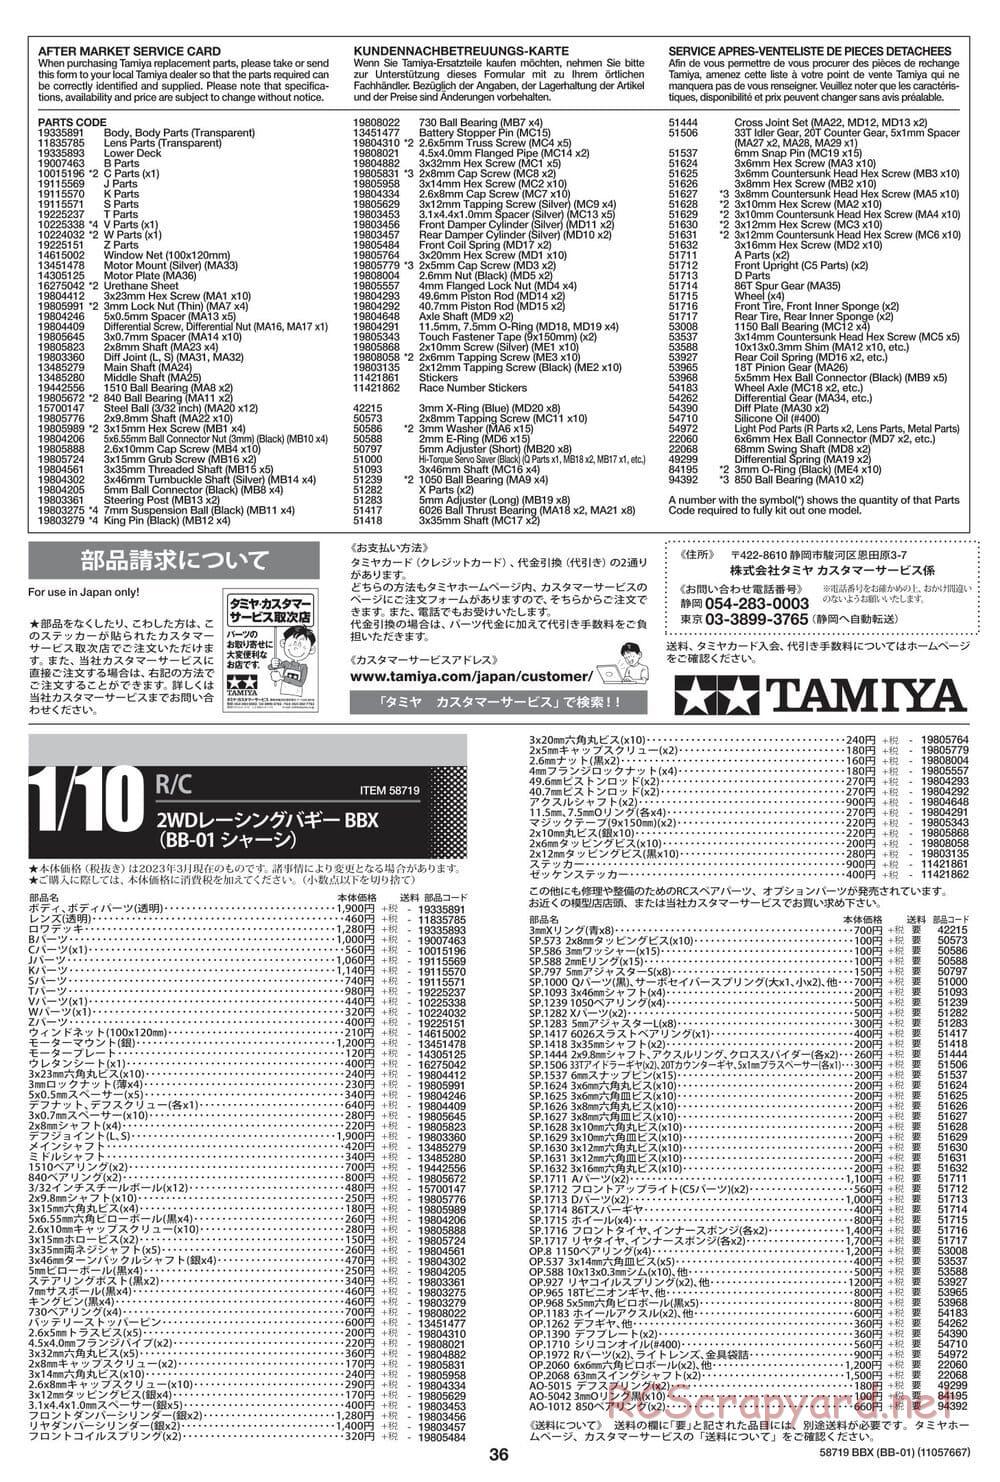 Tamiya - BBX - BB-01 Chassis - Manual - Page 36